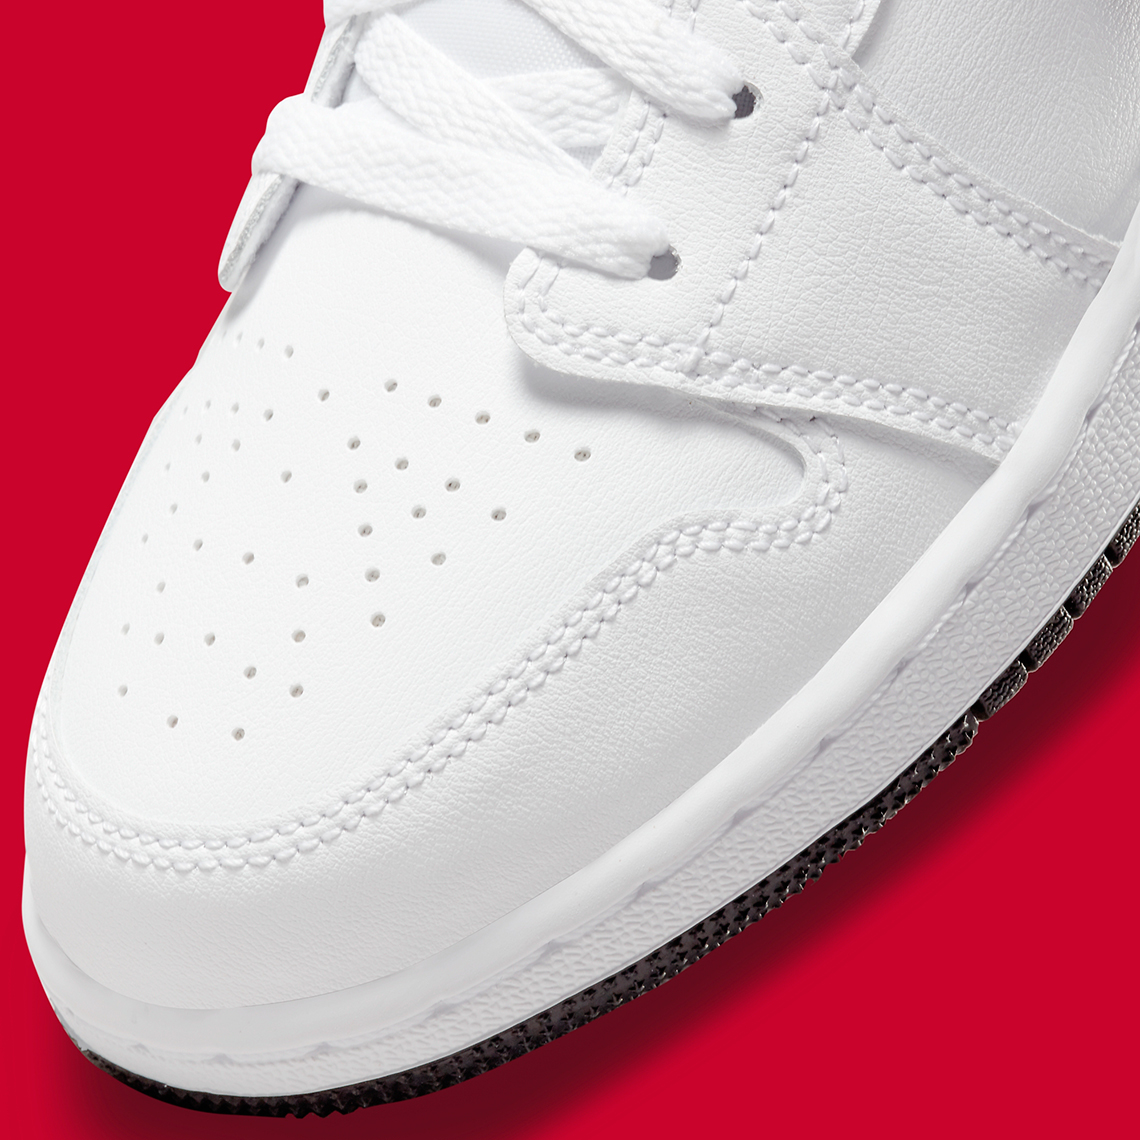 Air Jordan 1 Low White Black Red 553560-160 | SneakerNews.com